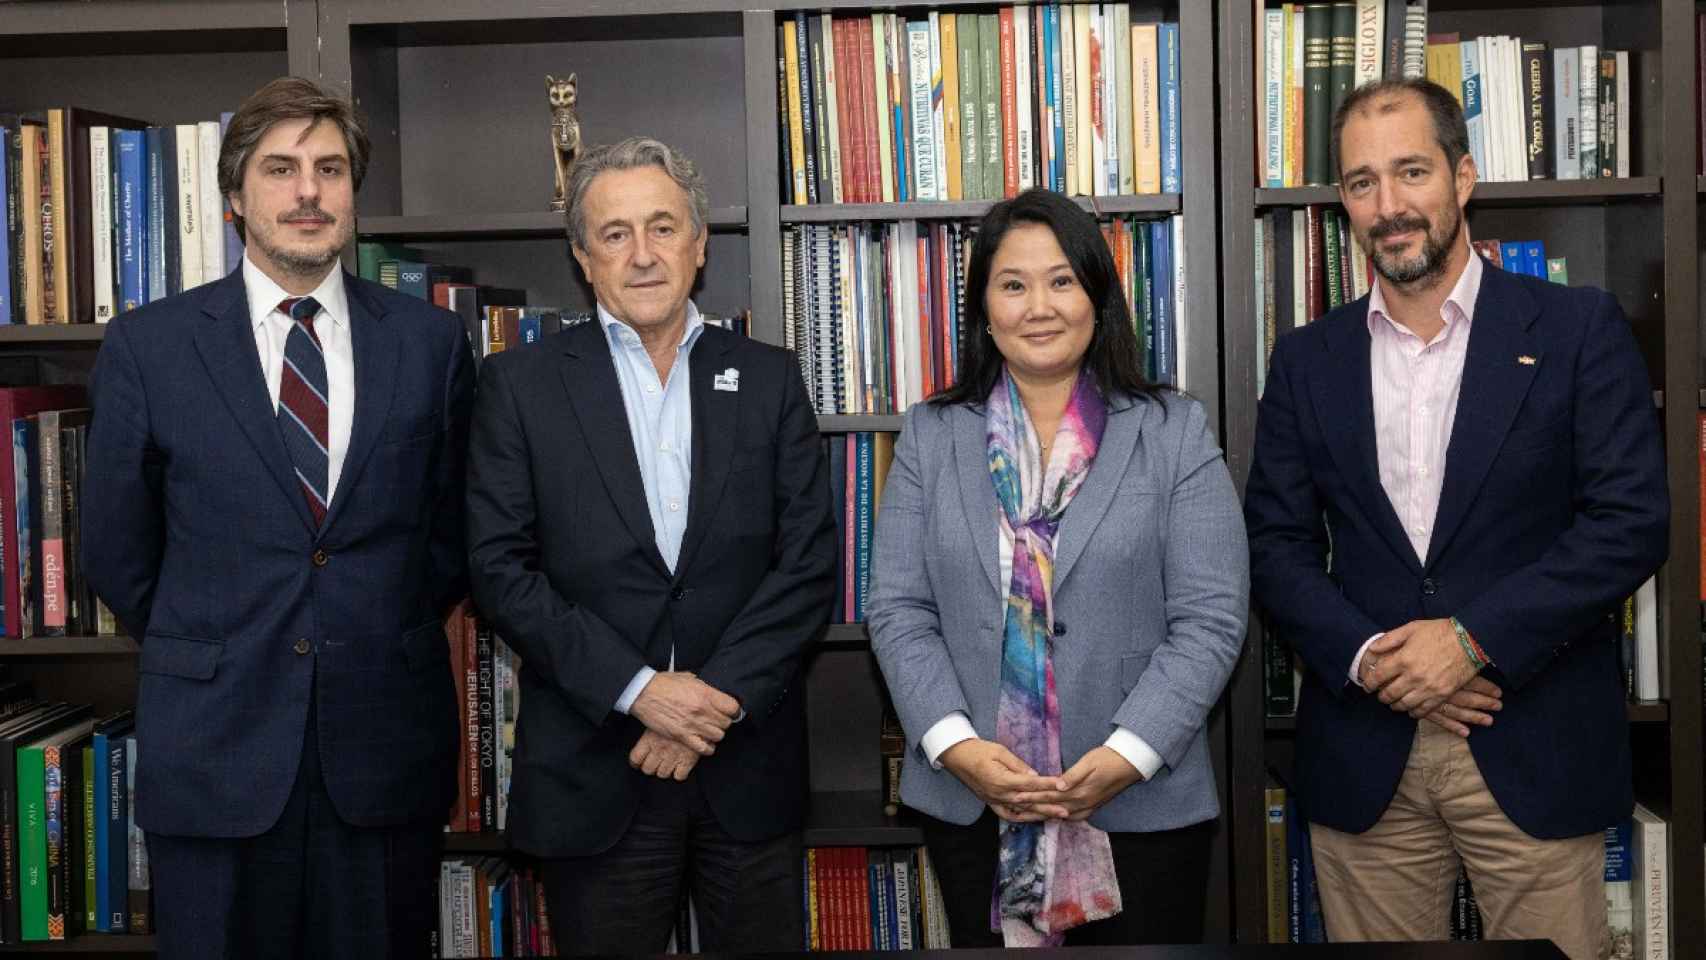 El director de Disenso, Martín Frías, junto a Hermann Tertsch en una visita a la líder derechista peruana Keiko Fujimori.